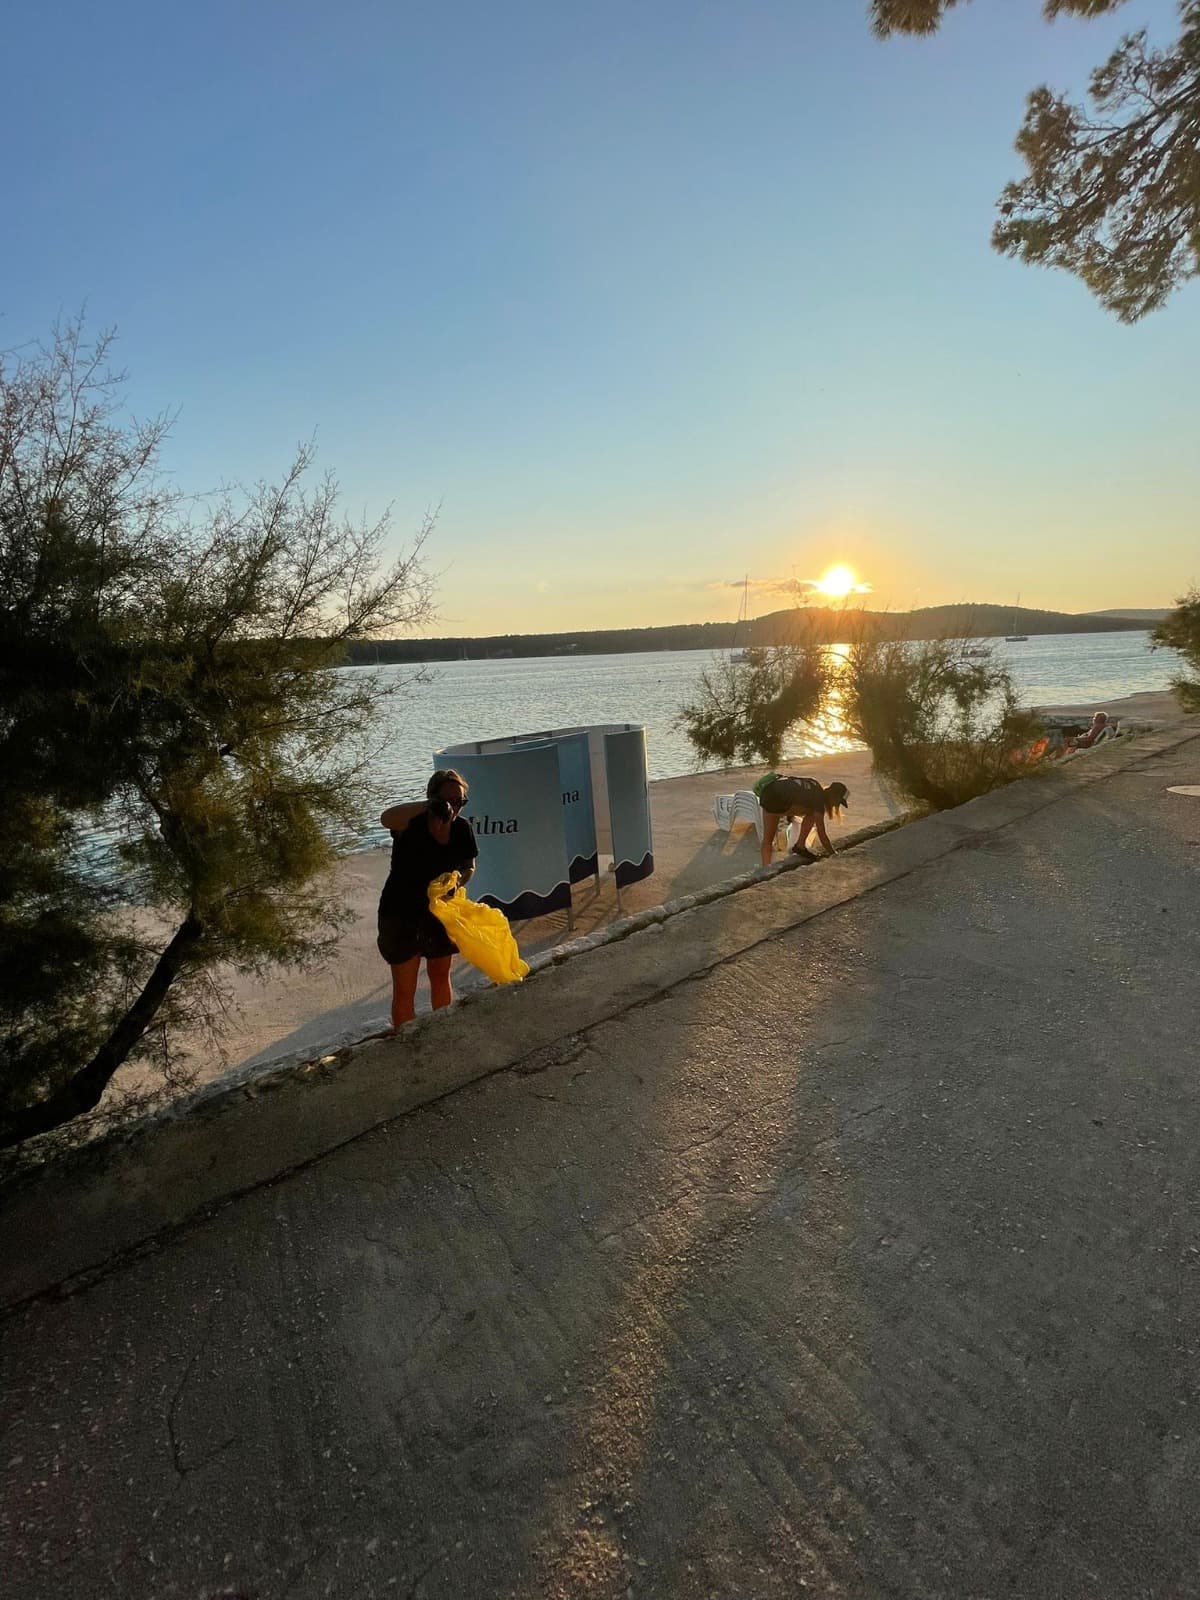 Eine Person geht bei Sonnenuntergang einen Weg am Seeufer entlang und trägt eine gelbe Tasche, während sich eine andere Person in der Nähe bückt. Der See reflektiert das Sonnenlicht, eingerahmt von Bäumen und einem klaren Himmel, was an